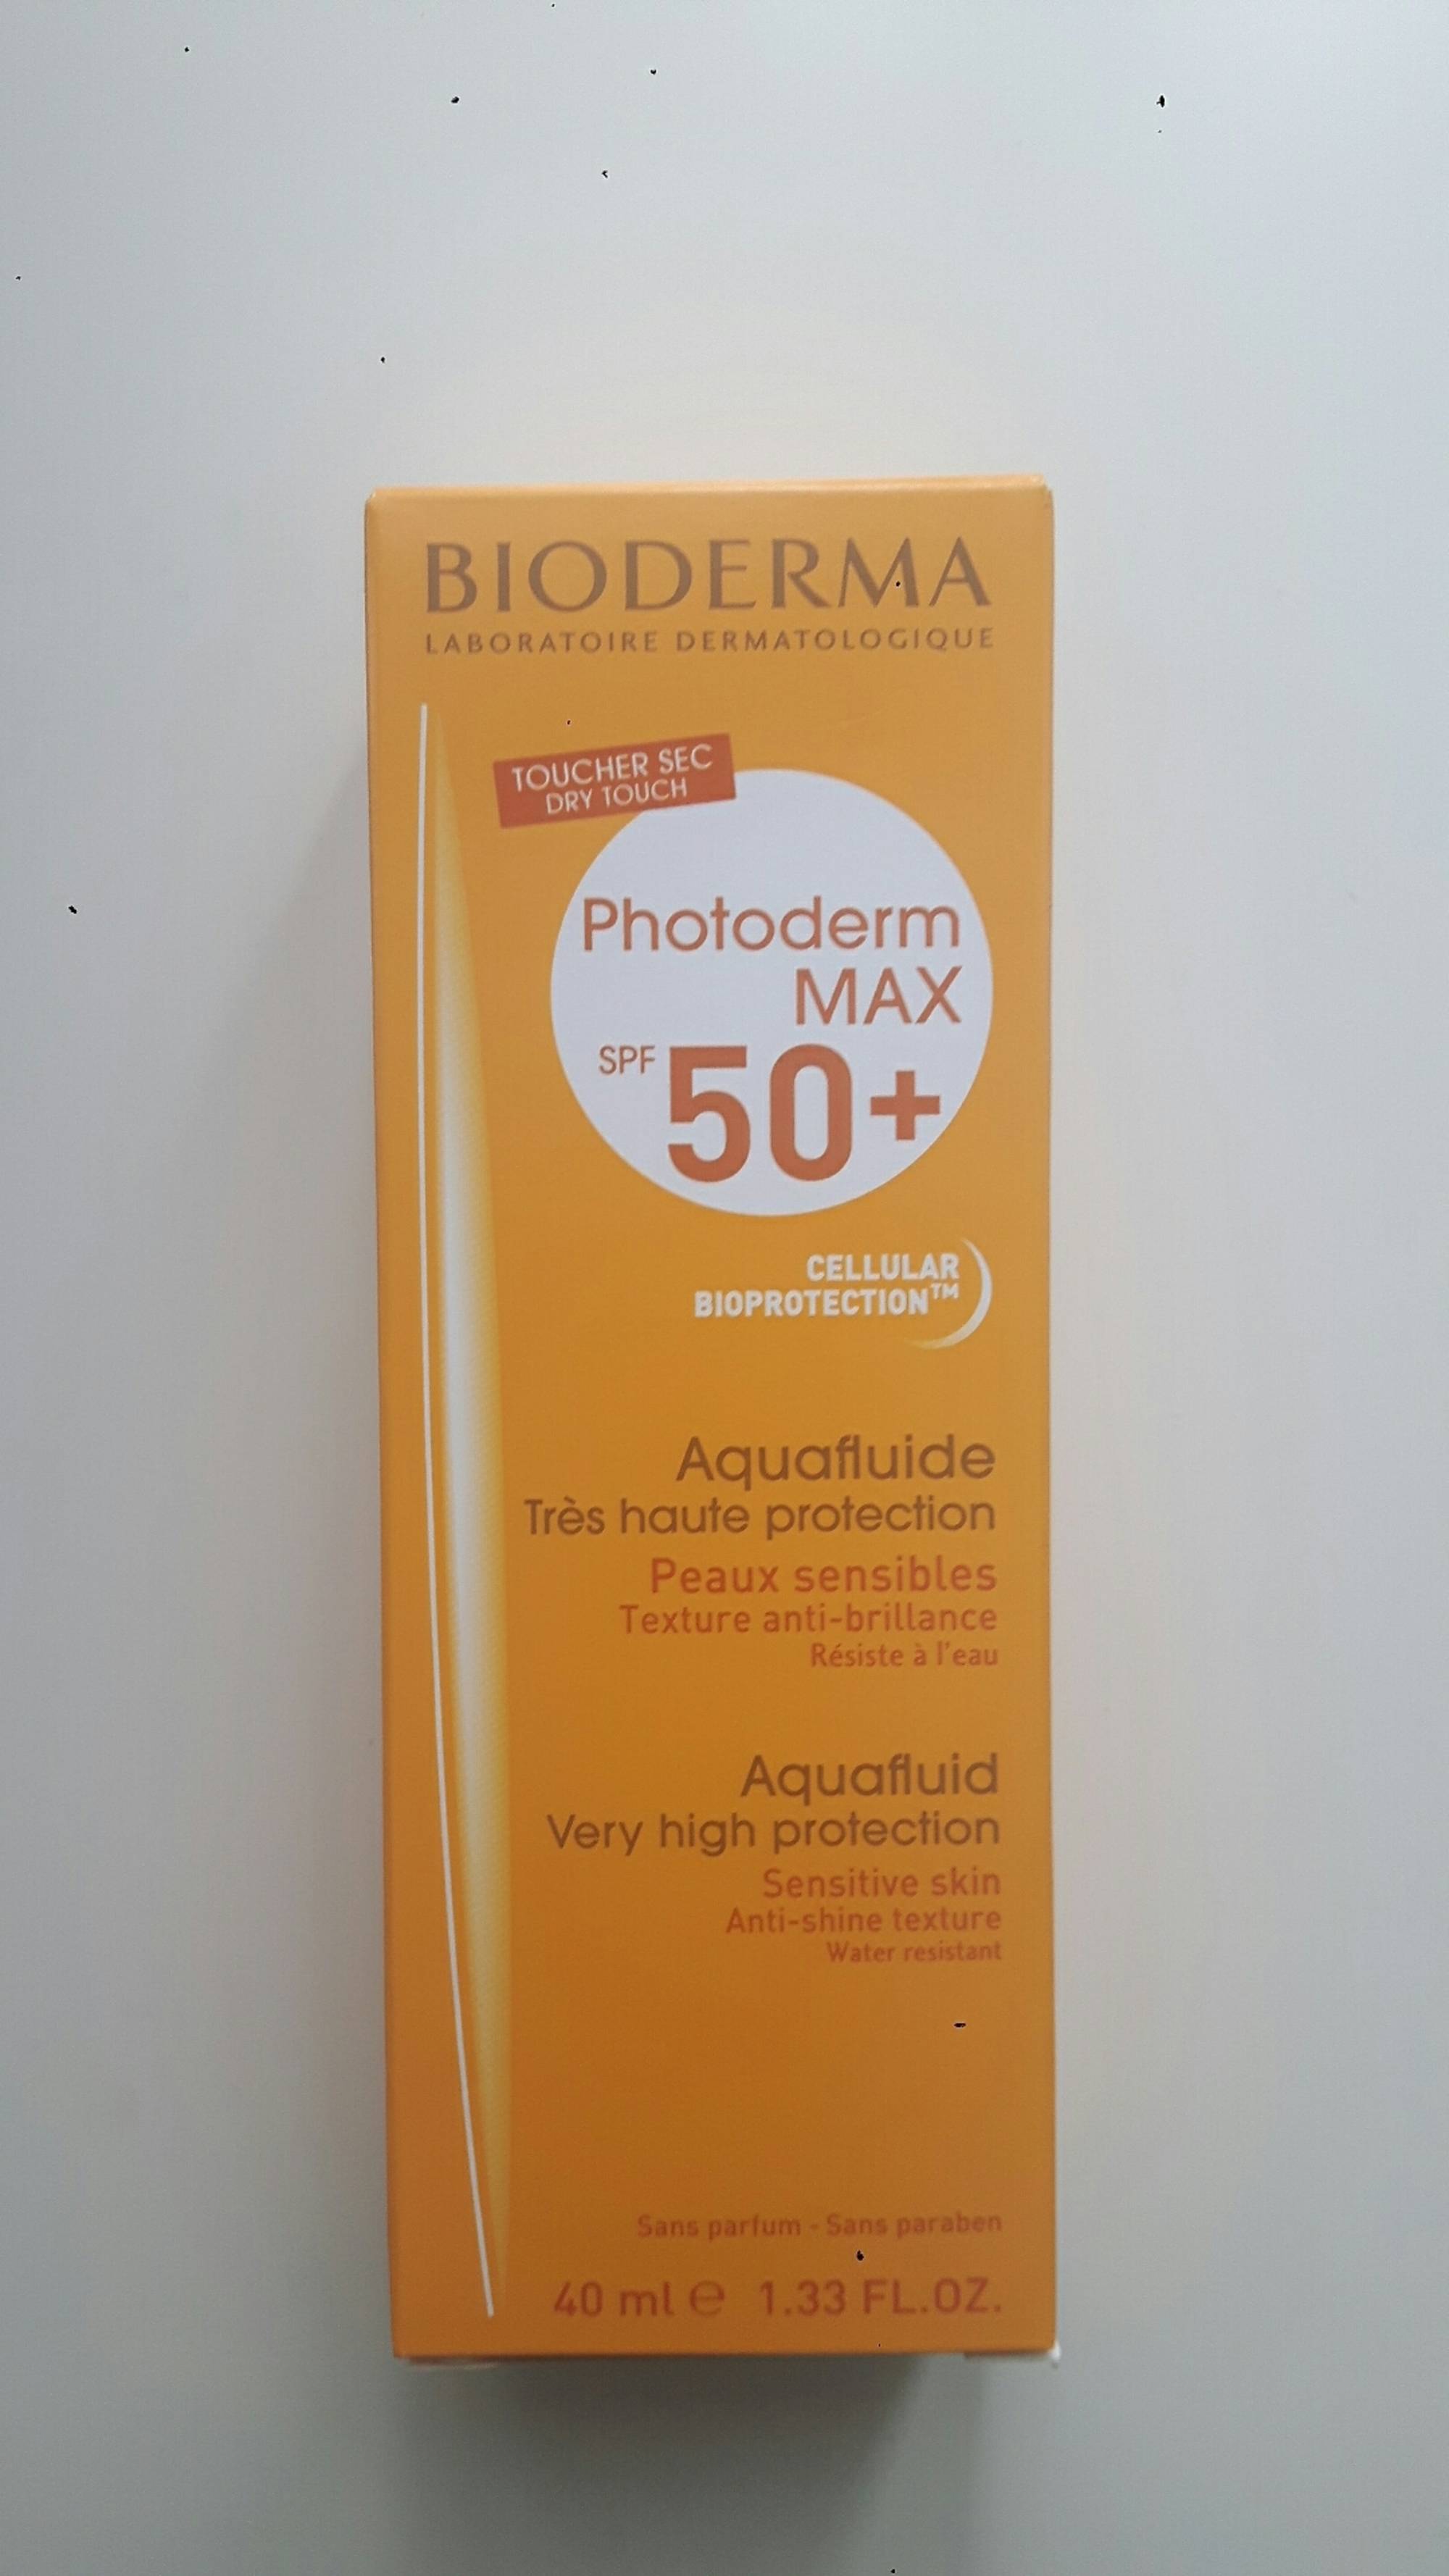 BIODERMA - Photoderm max SPF 50 - Aquafluide très haute protection